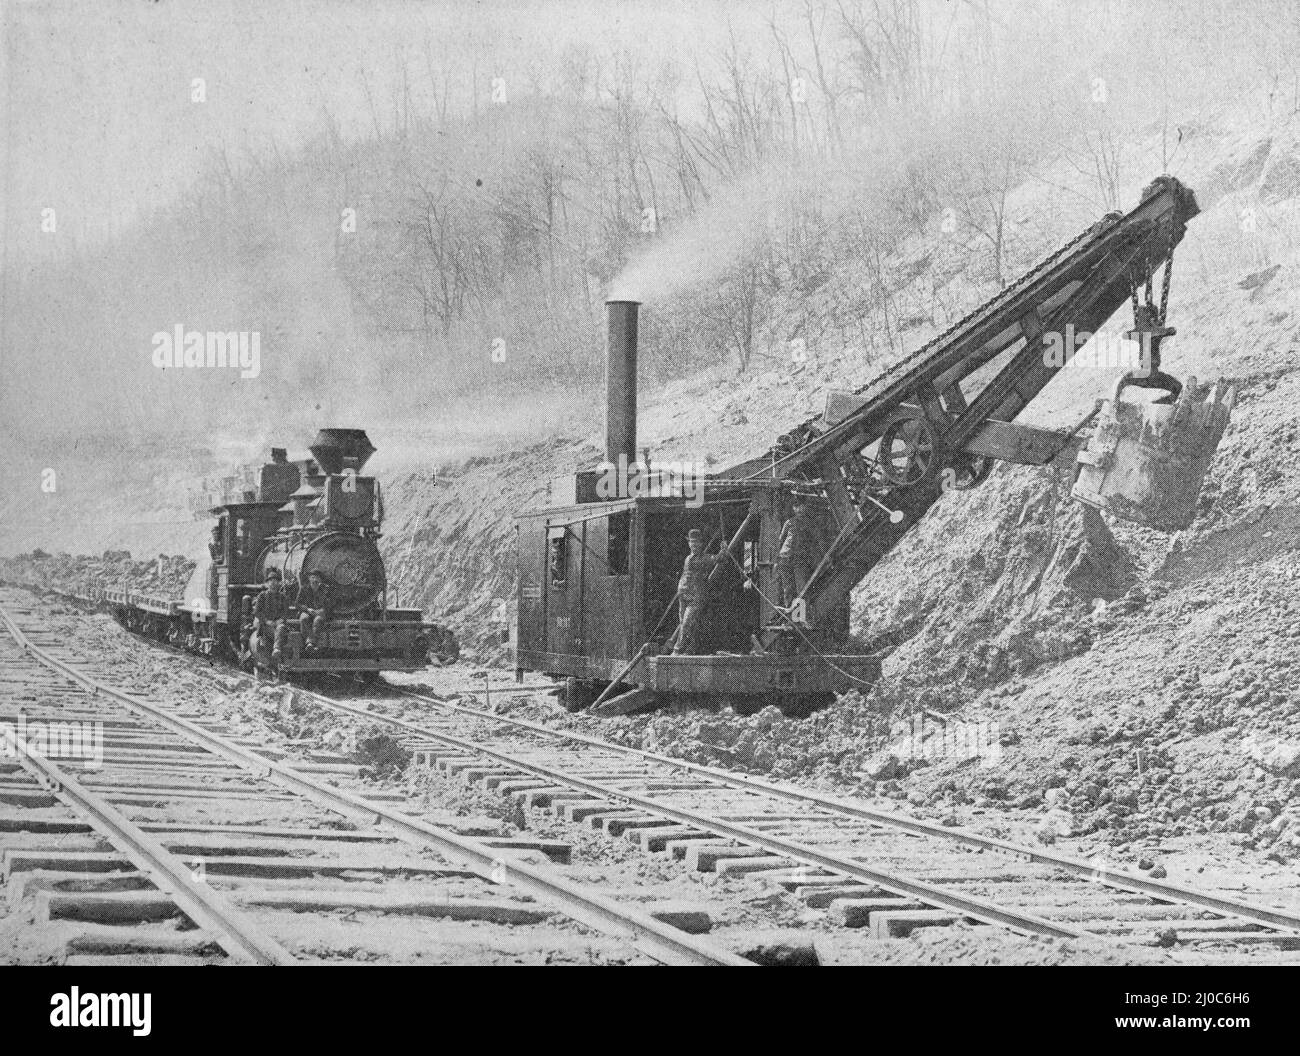 Una pala de vapor de ferrocarril construida por Bucyrus Steam Shovel & Dredge Company.Fotografía en blanco y negro tomada alrededor de 1890s Foto de stock